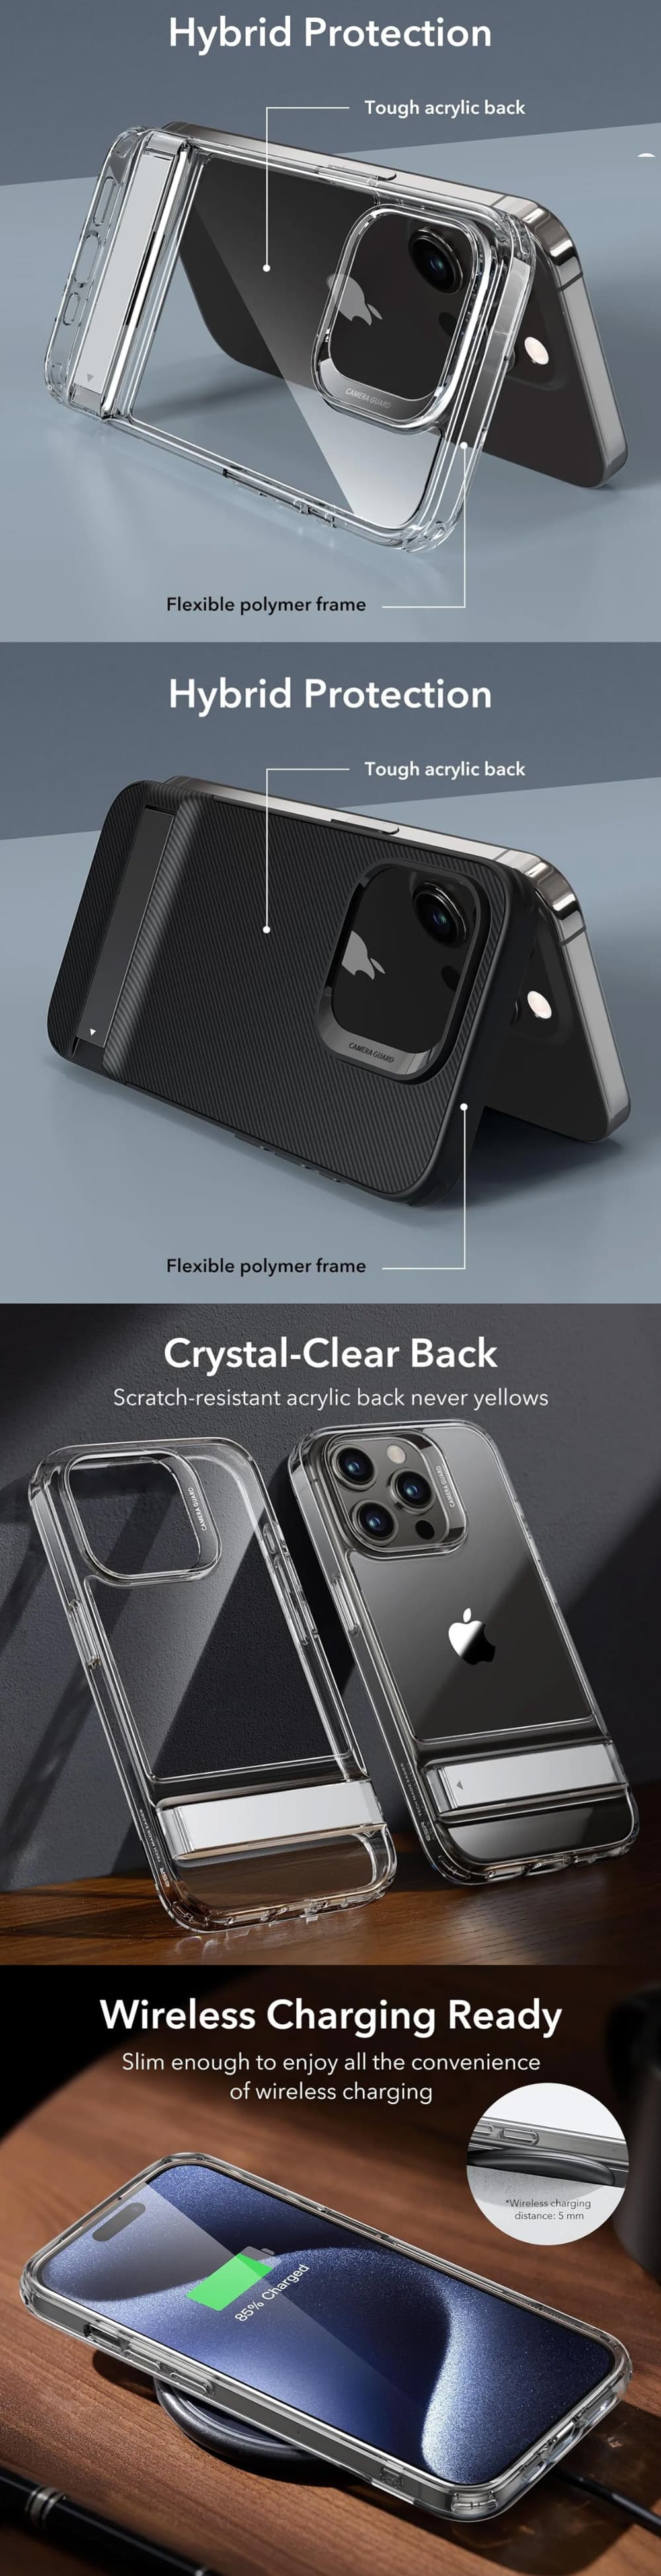 ESR iphone 15 Pro/15 Pro Max Boost Kickstand Case